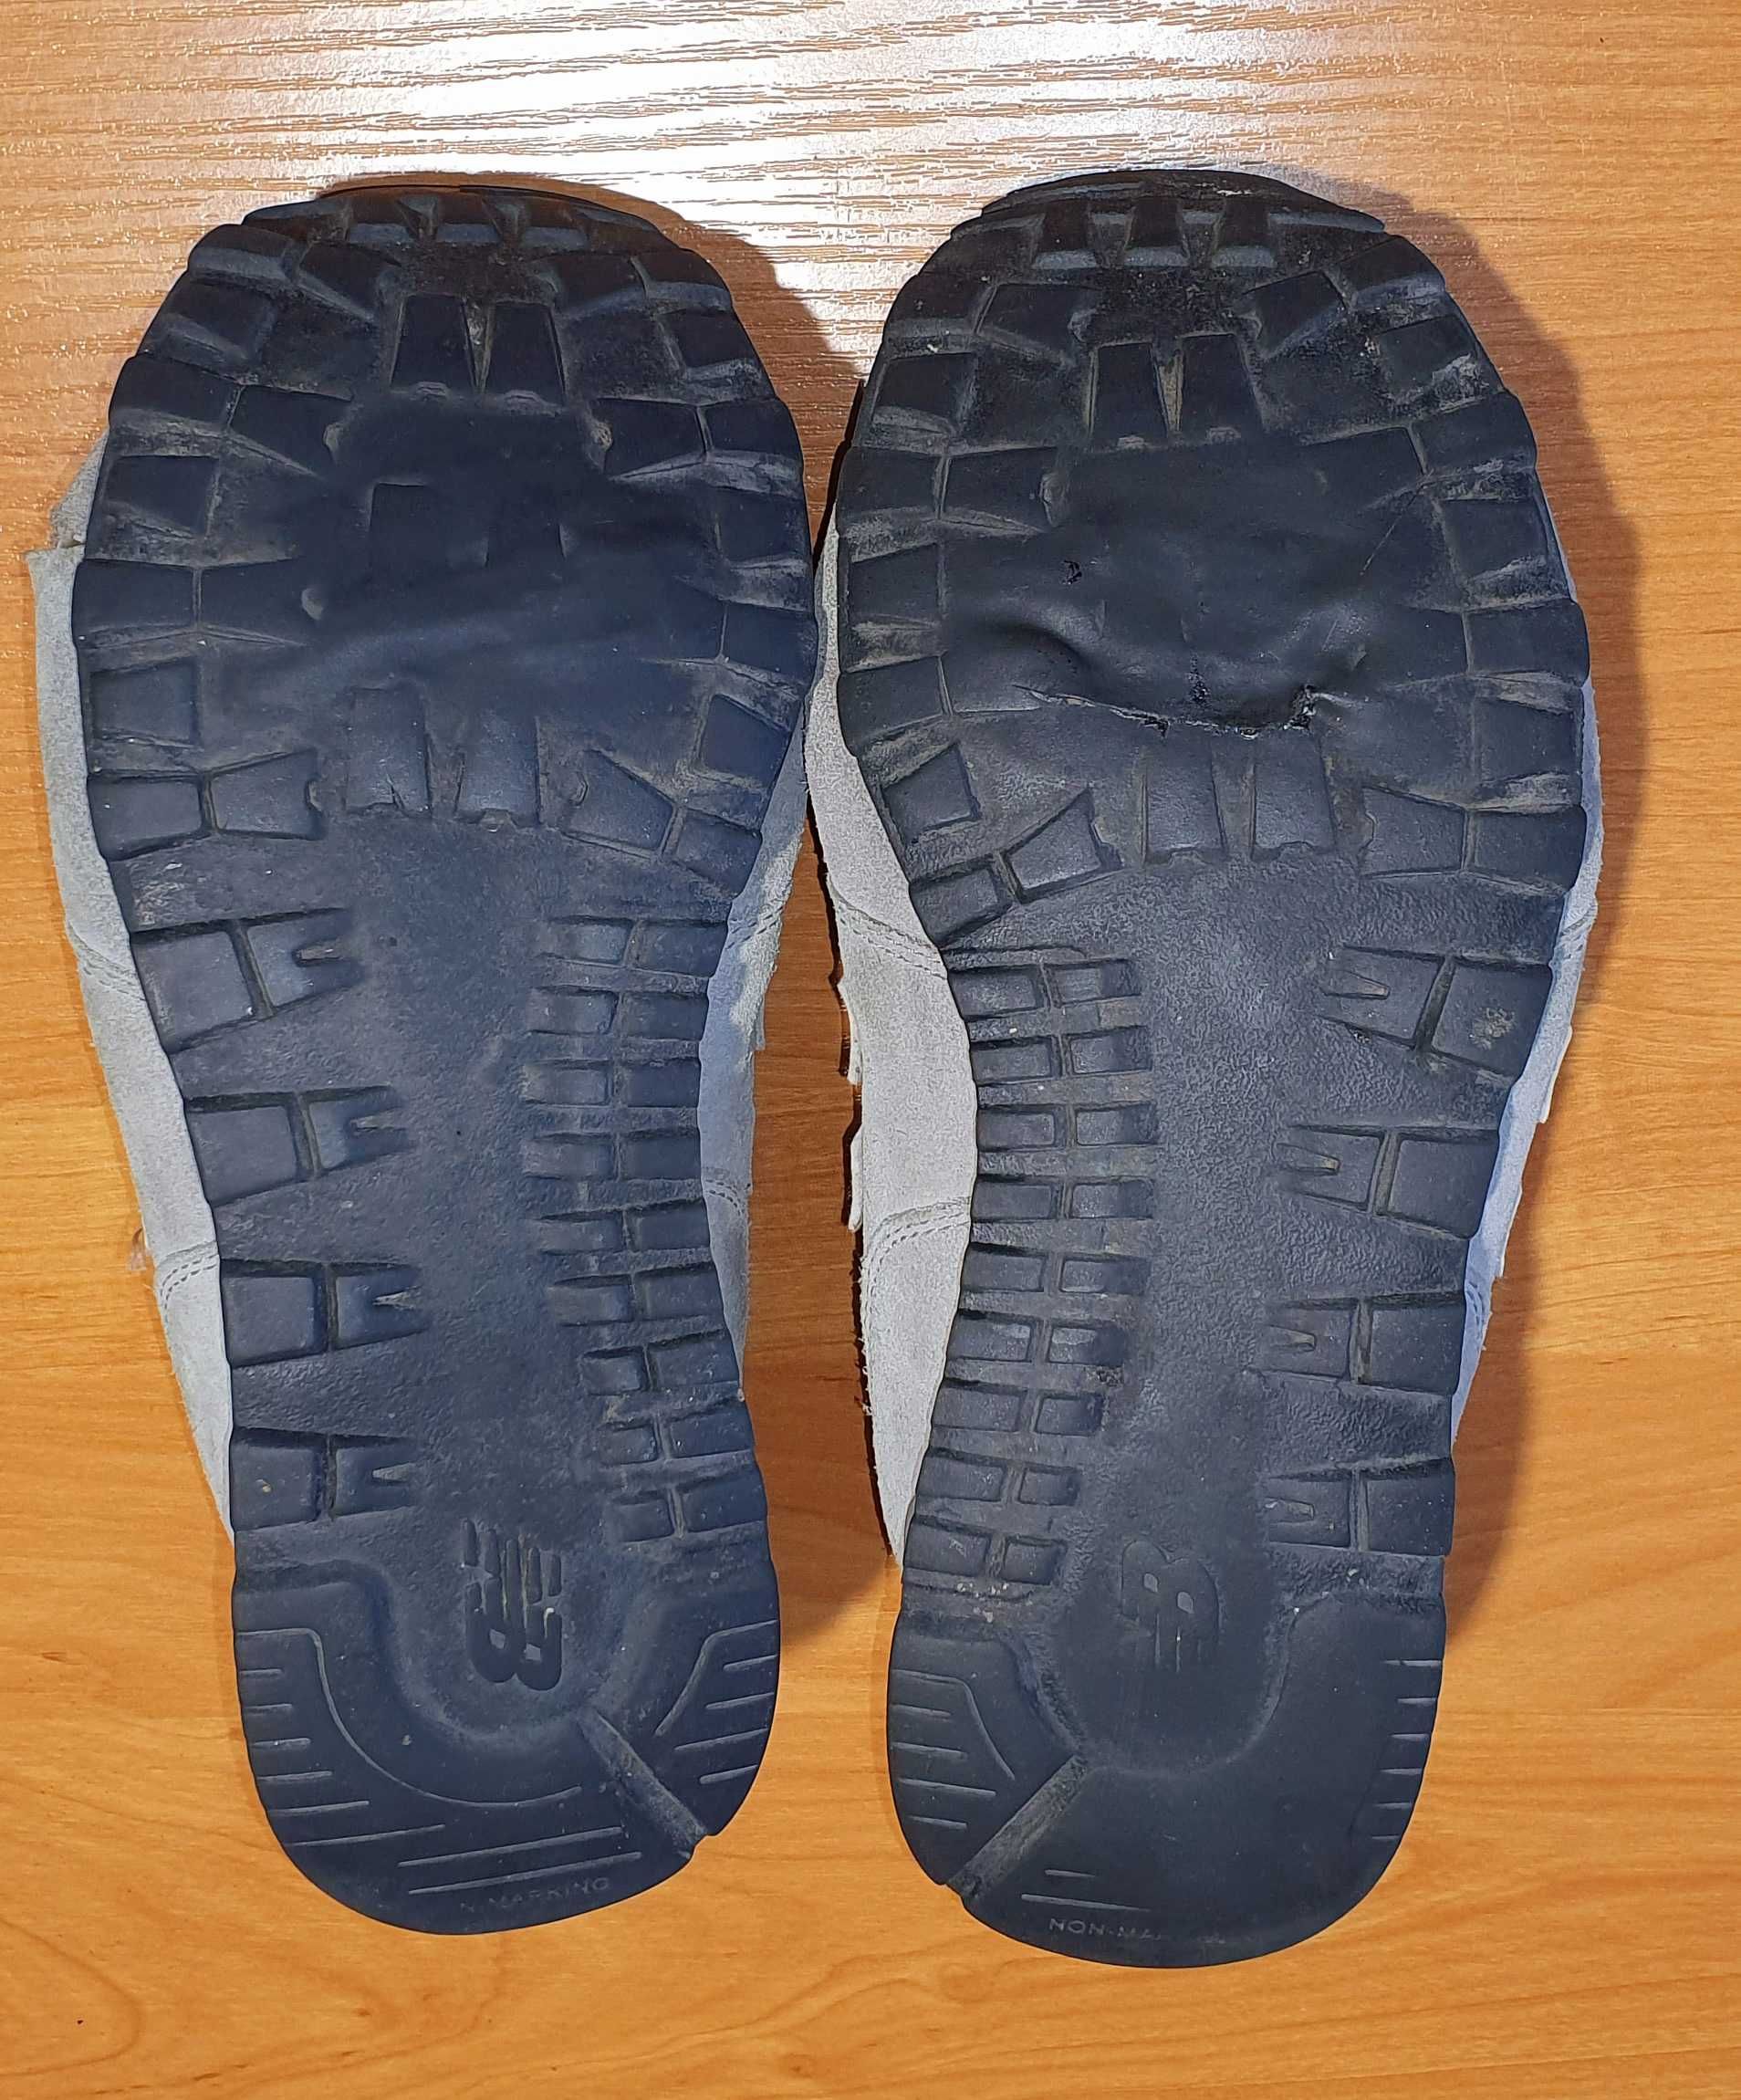 Buty klasyczne unisex NEW BALANCE KL574 rozm. 40 (dł. wkładki 25,5 cm)